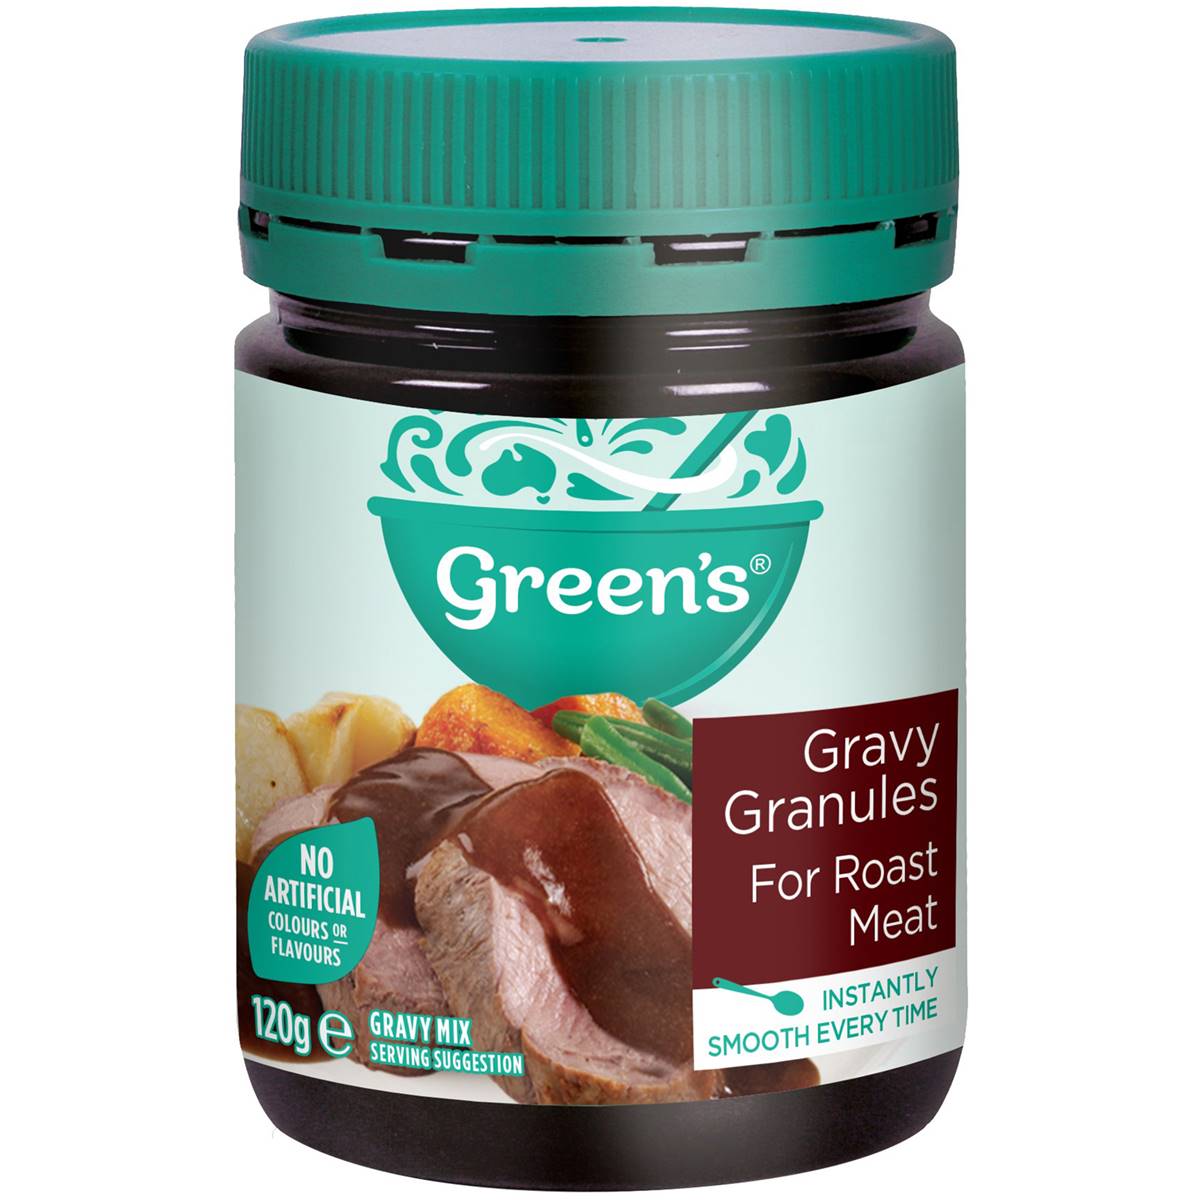 Greens Gravy Granules For Roast Meat 120g